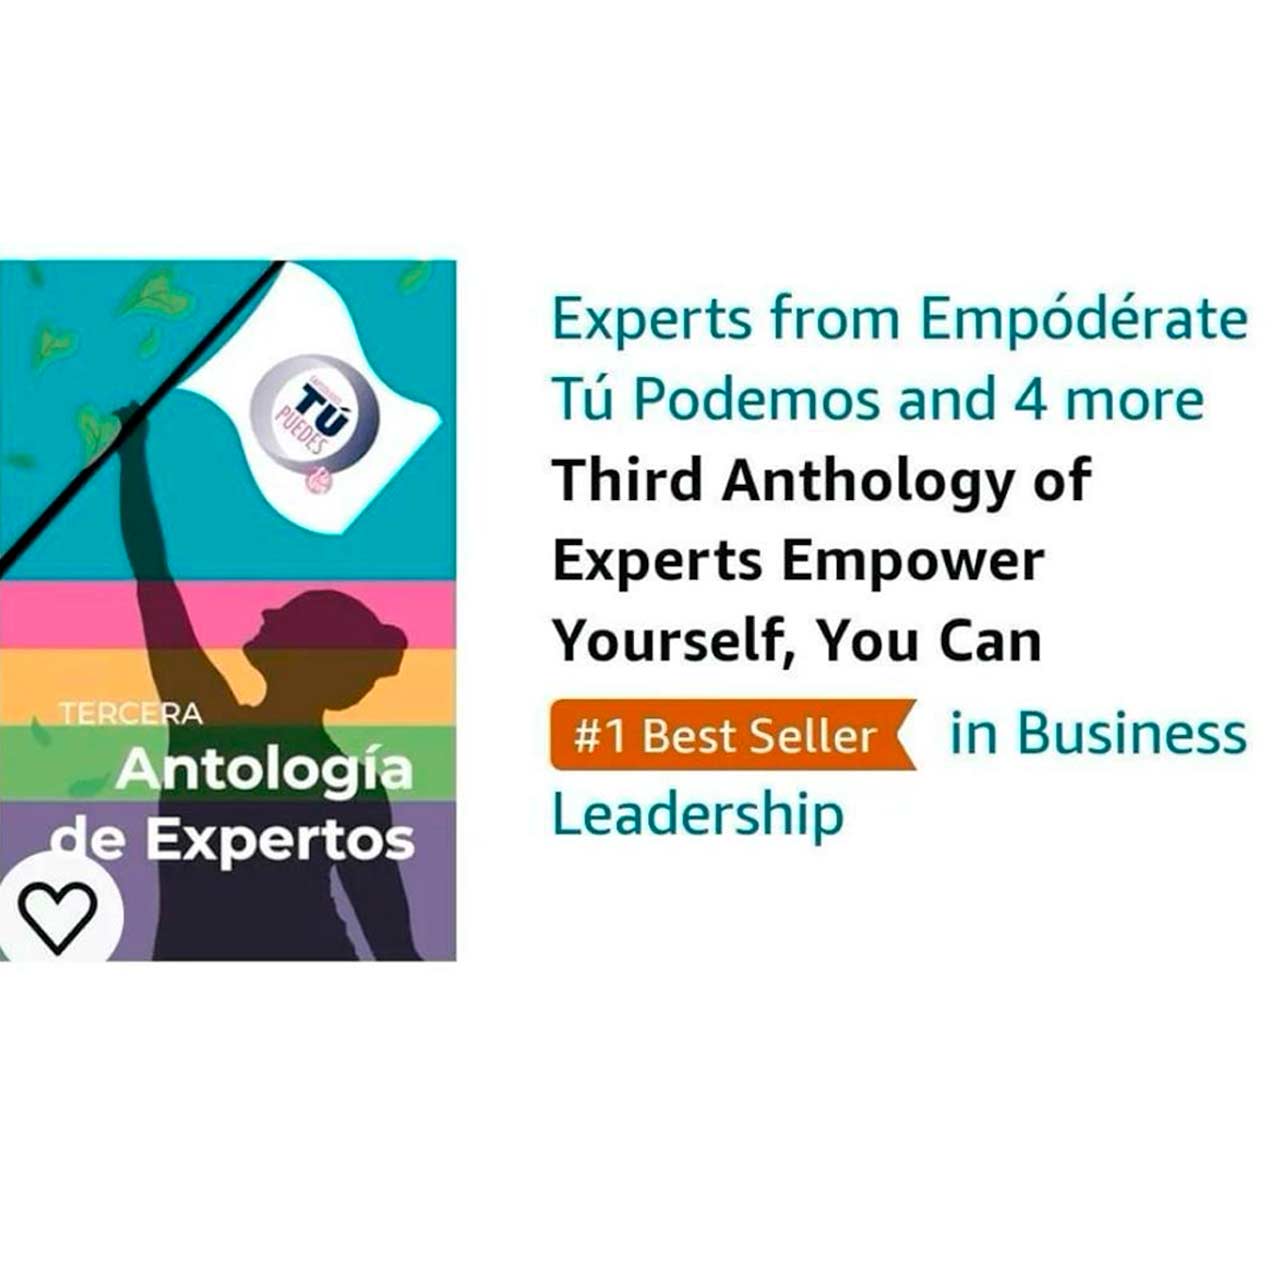 #1 Best Seller in Business Leadership